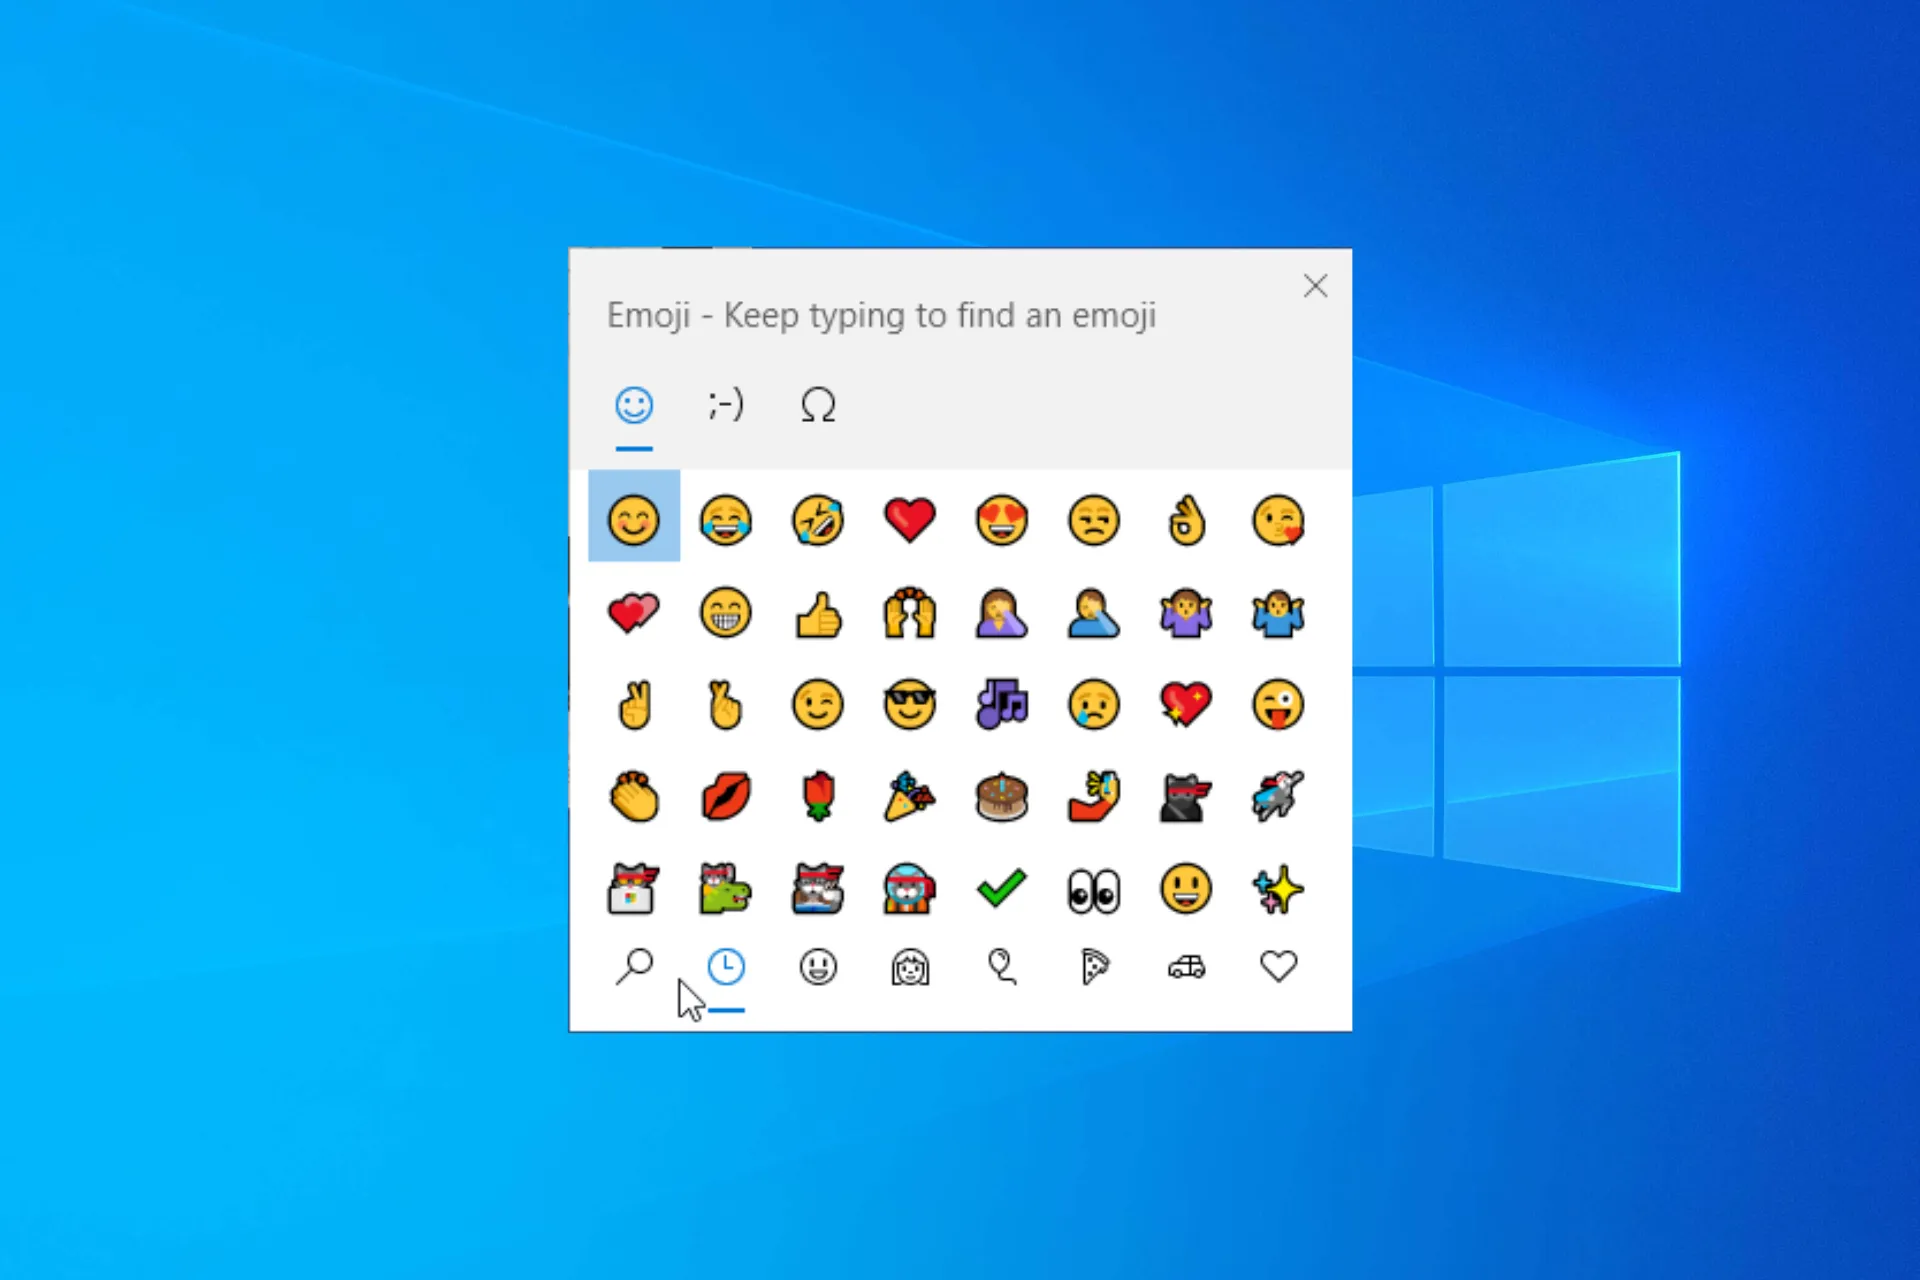 如何在 Windows 10 上開啟和使用表情符號面板